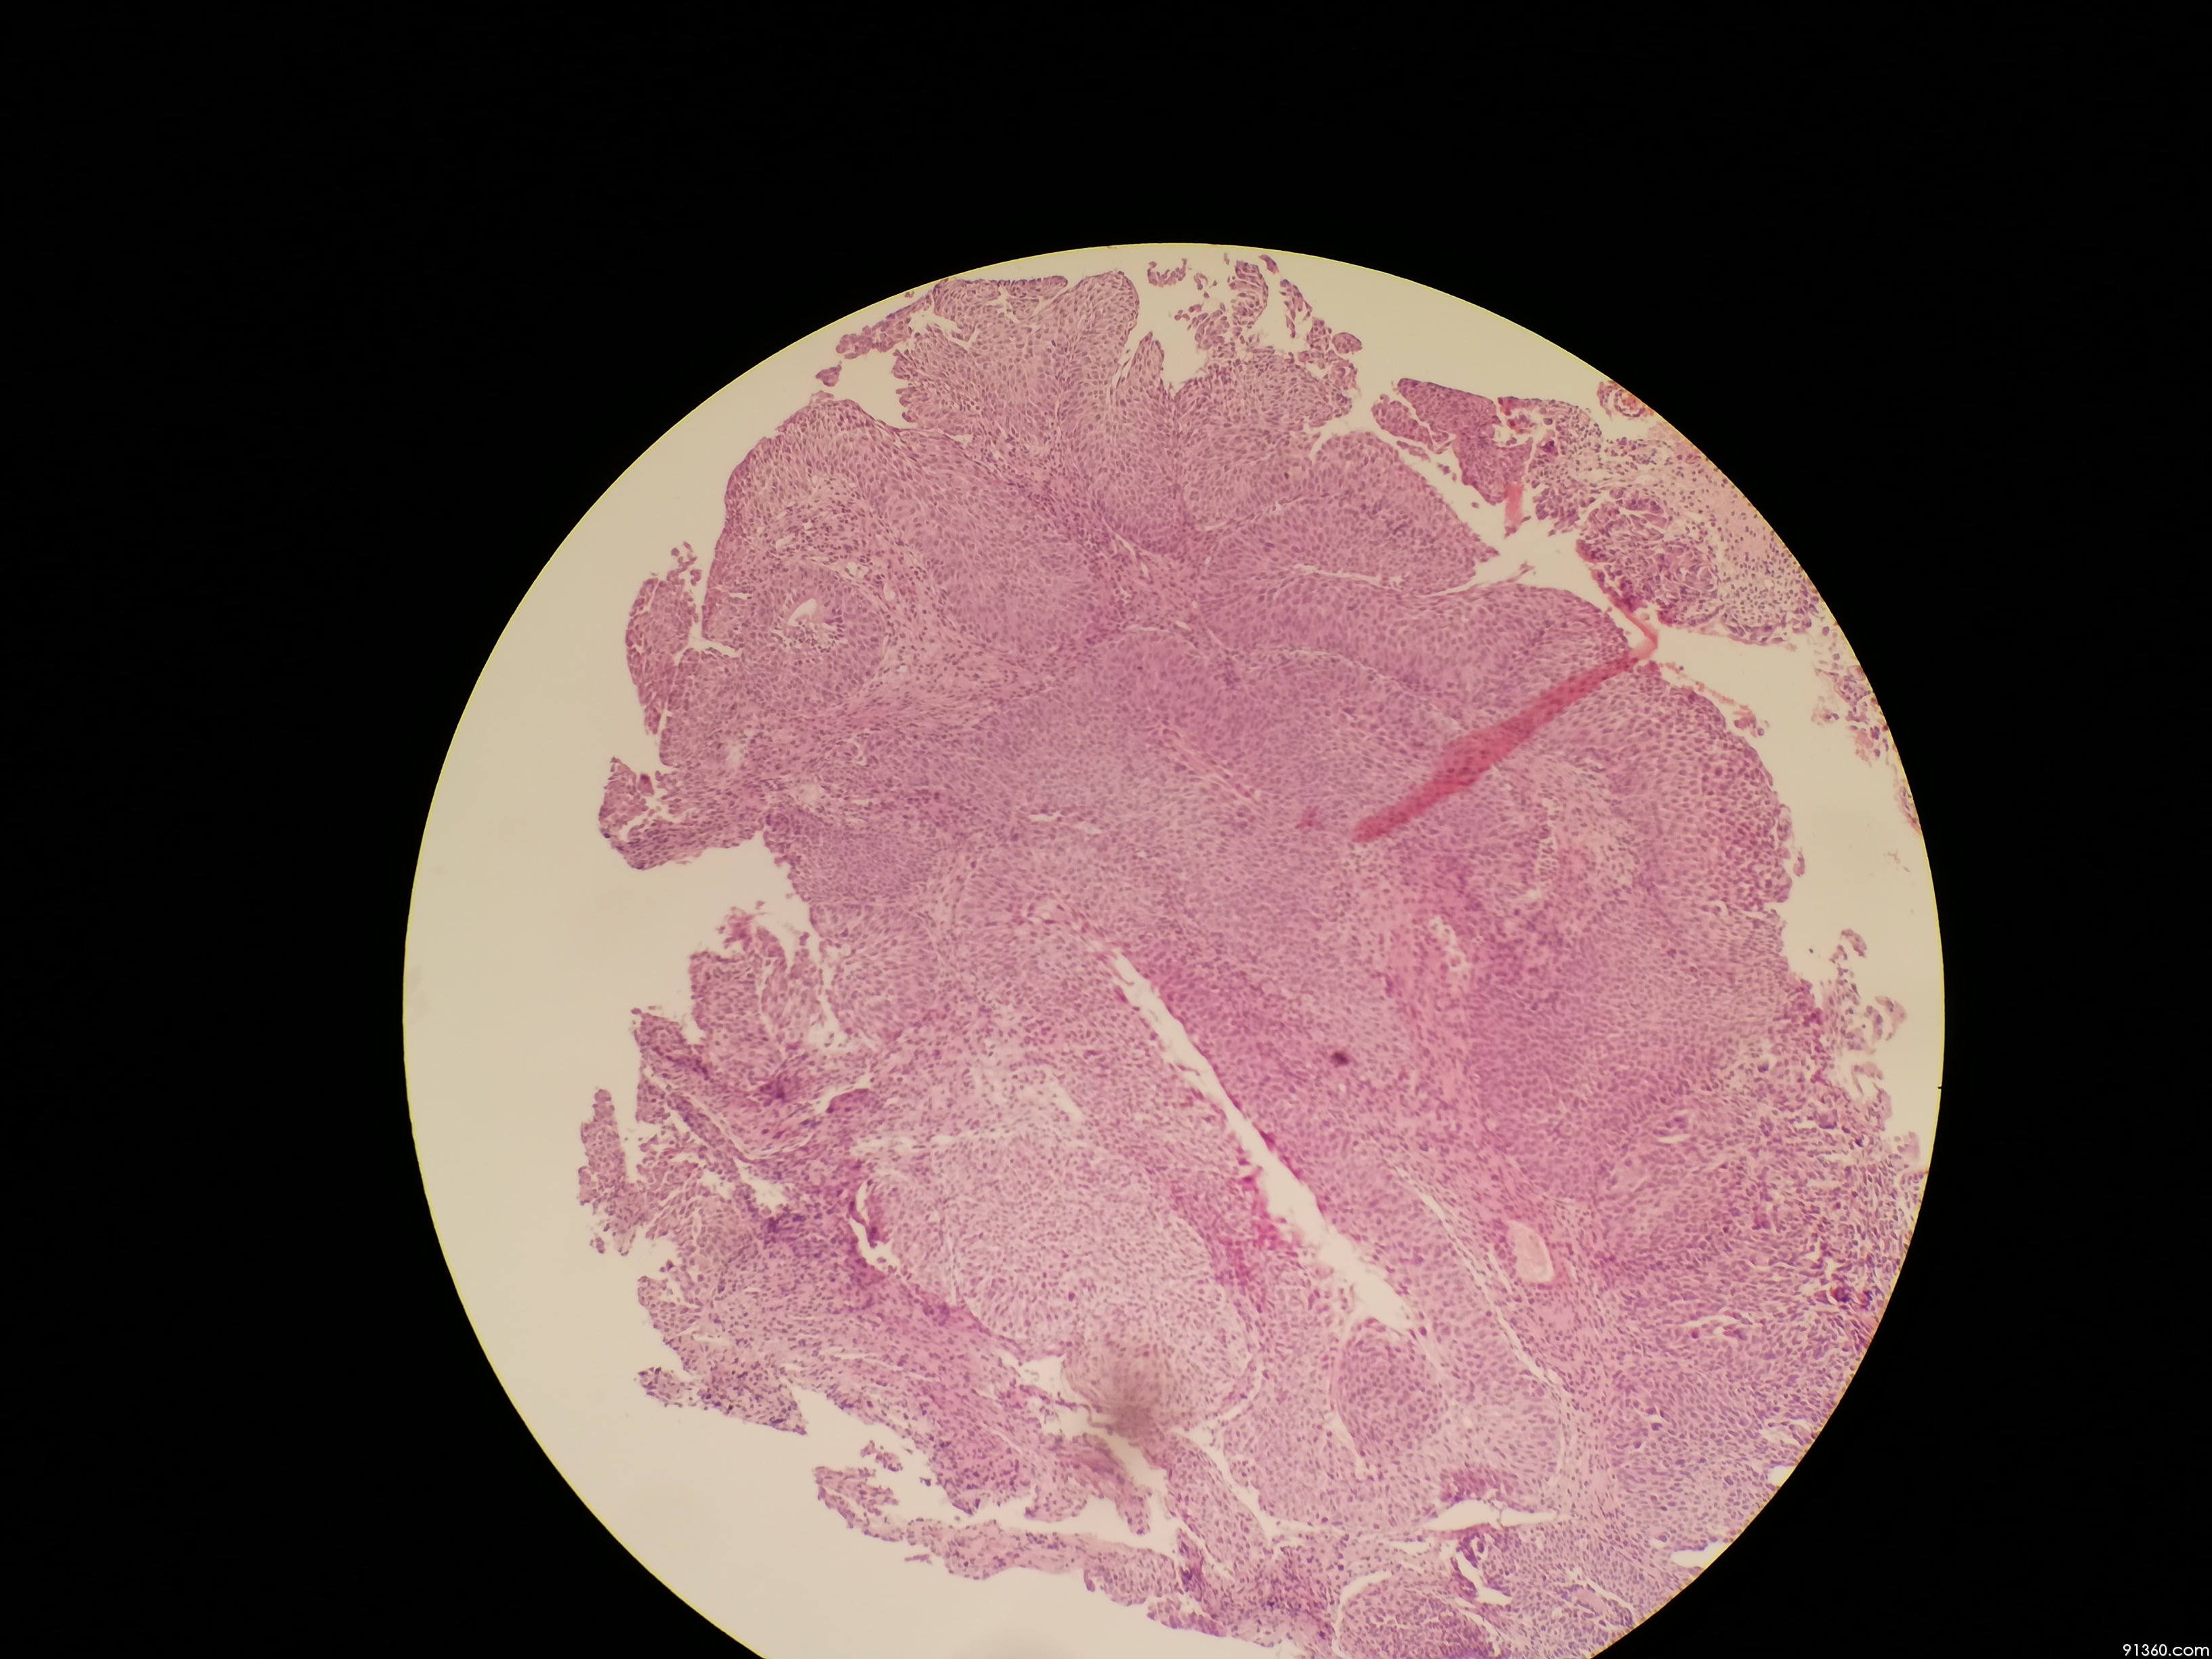 膀胱组织切片结构图片